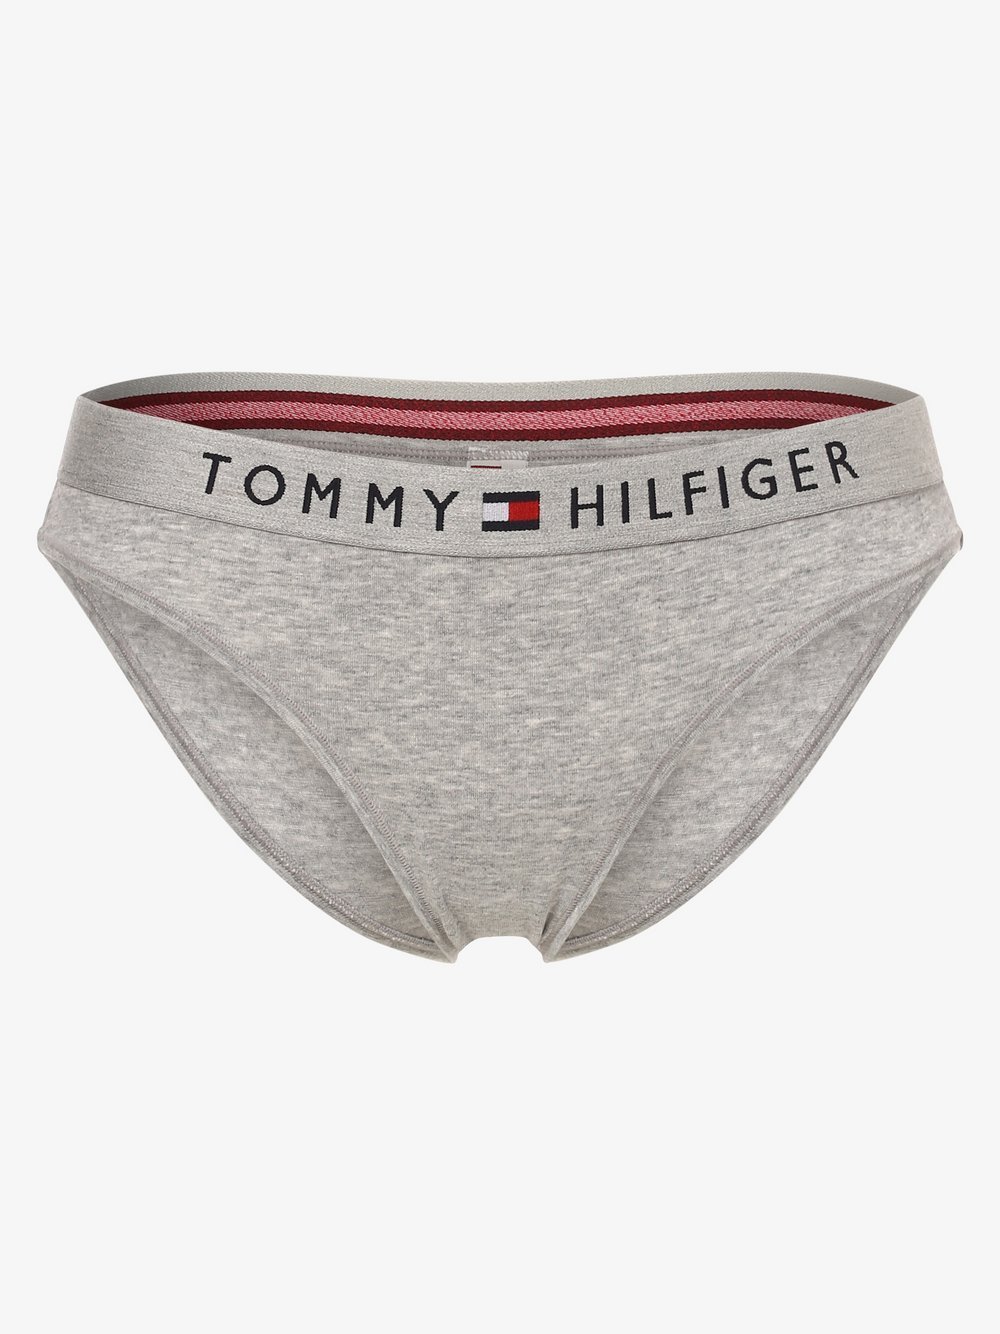 Tommy Hilfiger - Slipy damskie, szary